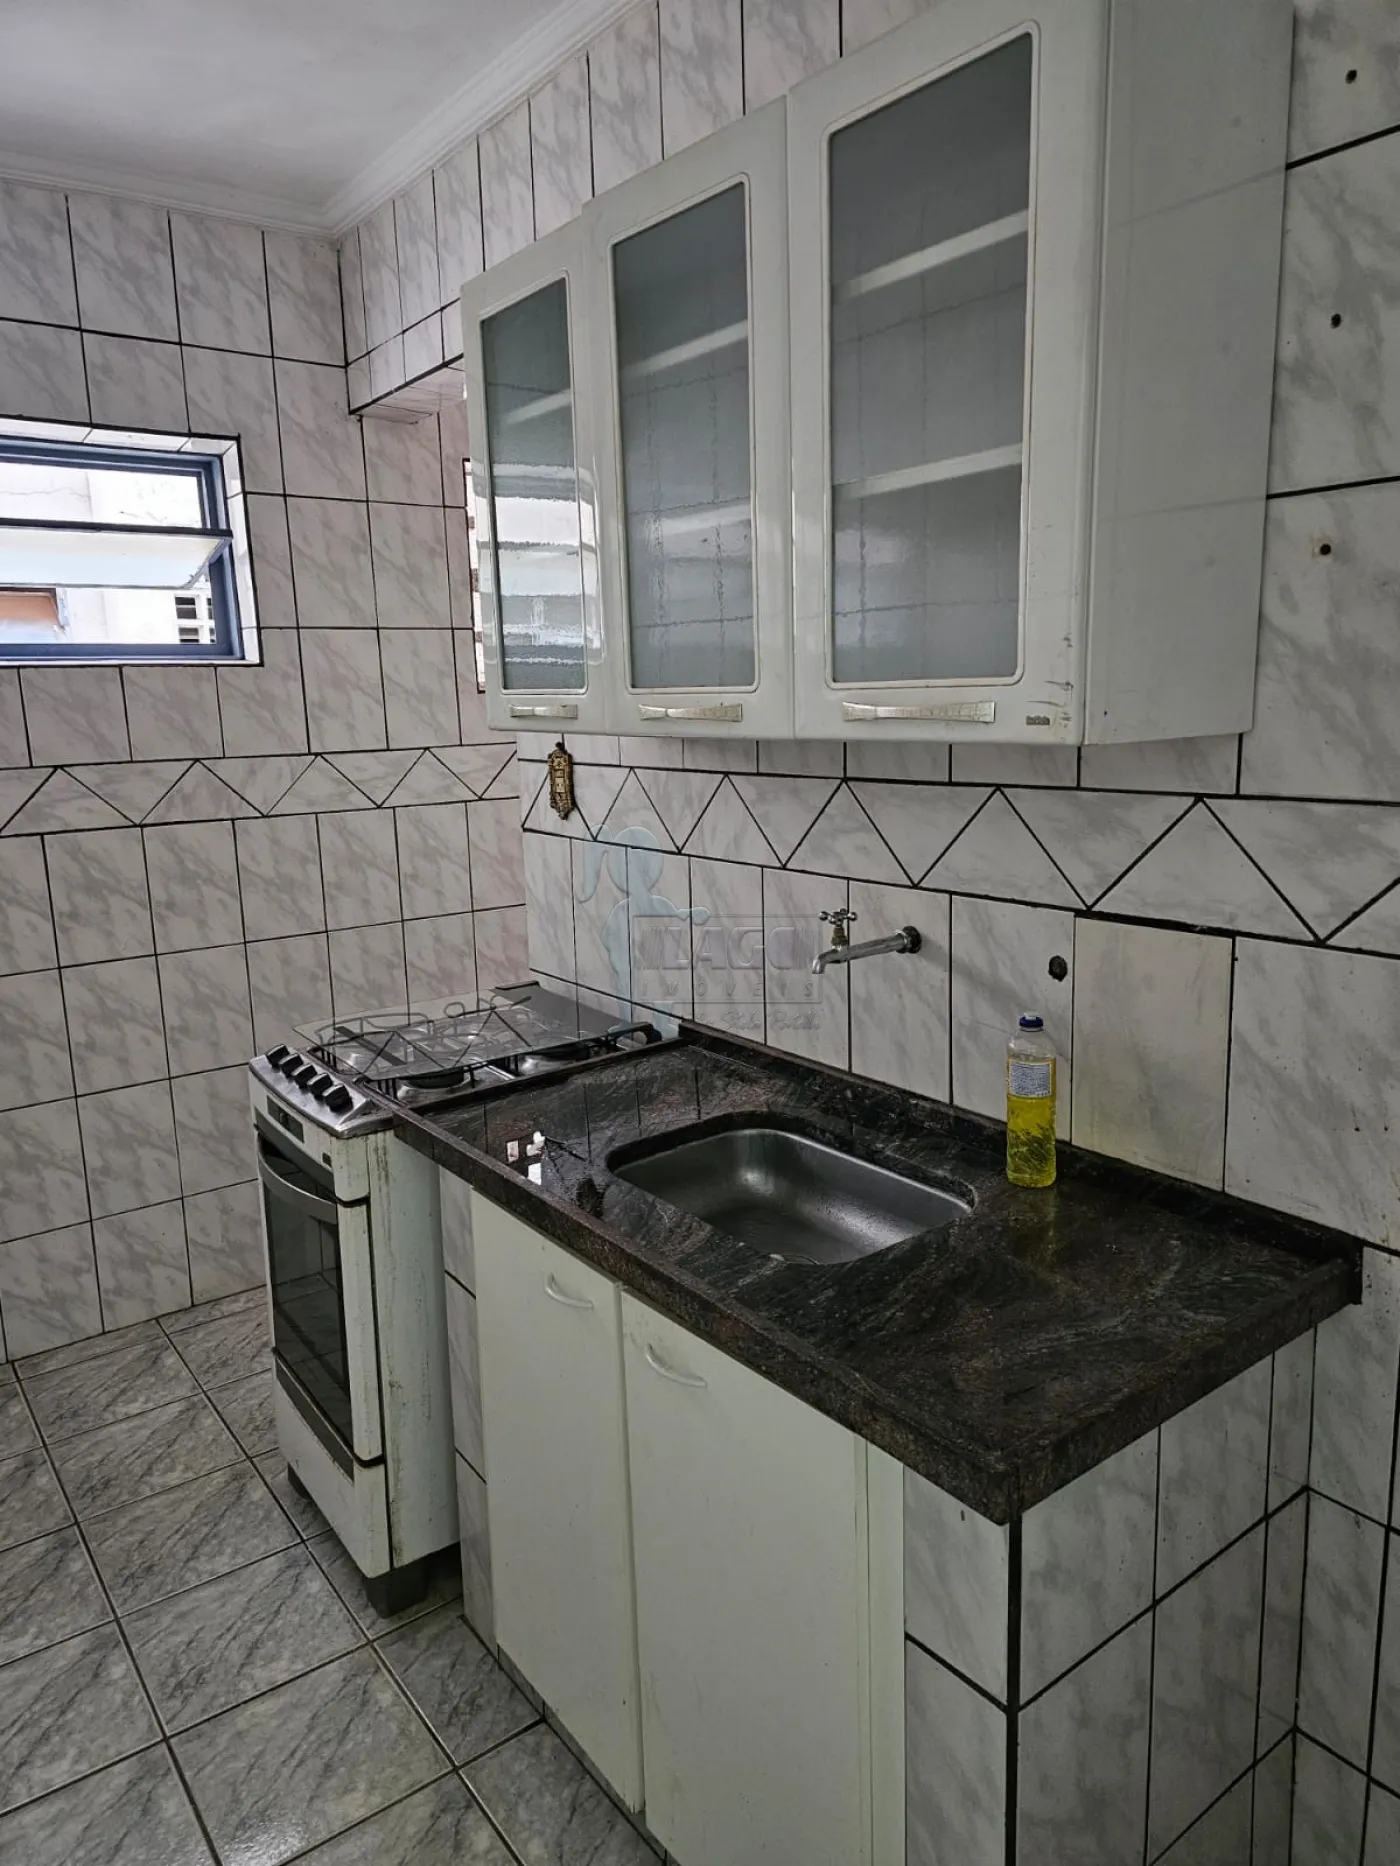 Alugar Apartamentos / Padrão em Ribeirão Preto R$ 790,00 - Foto 5